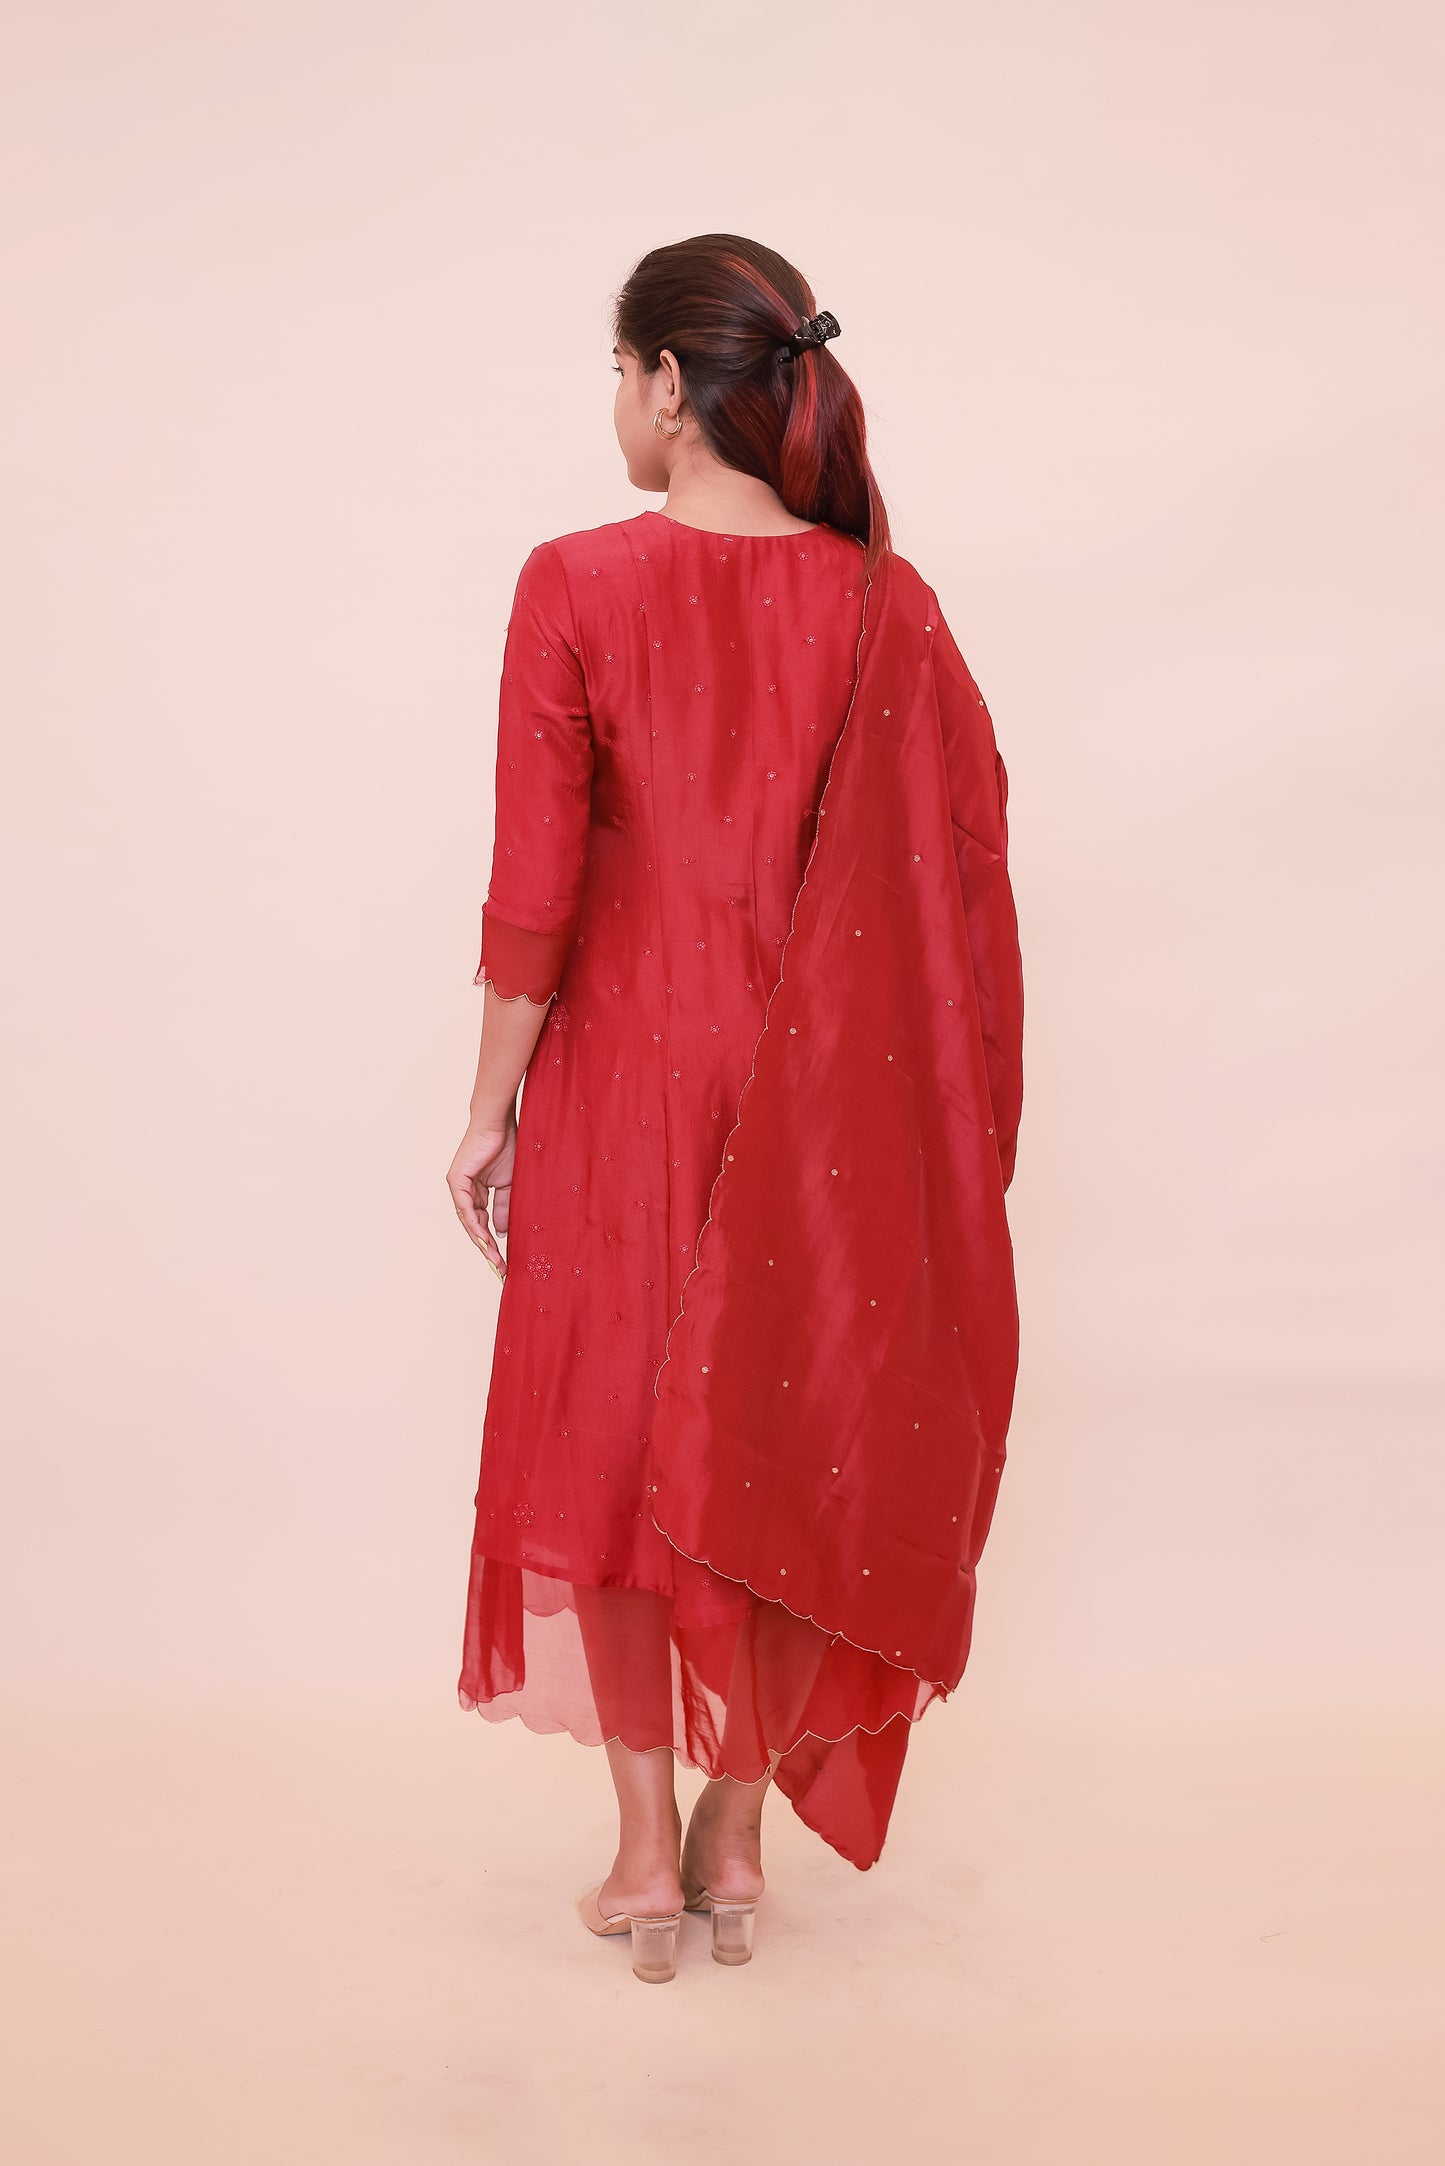 Red georgette dress with organza scallop neckline